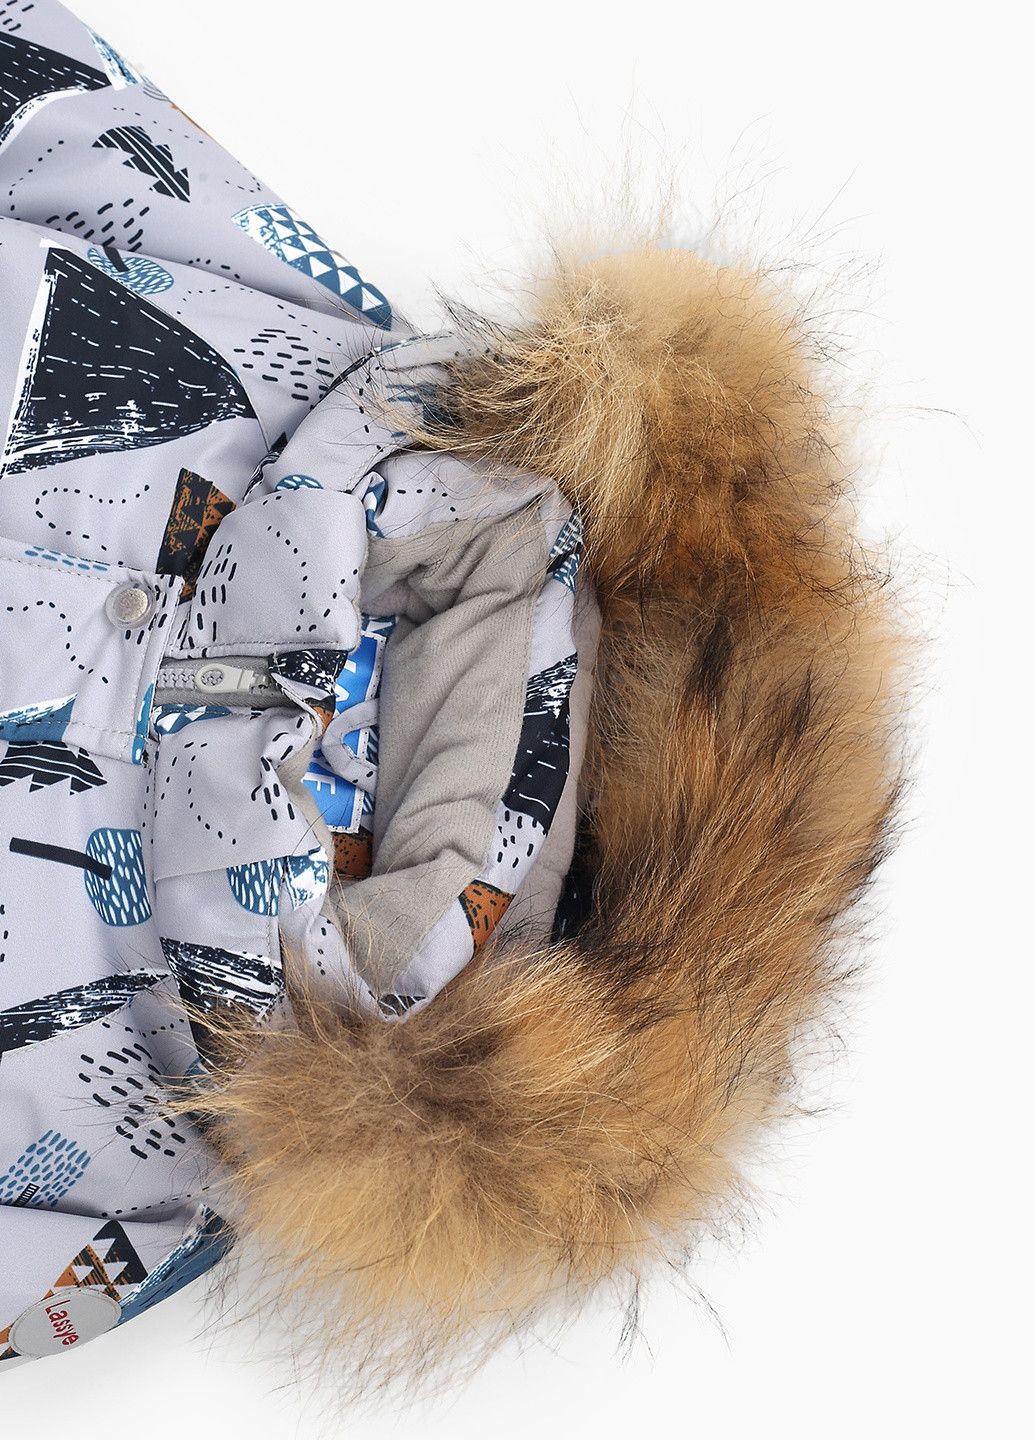 Светло-серая зимняя куртка Snowgenius